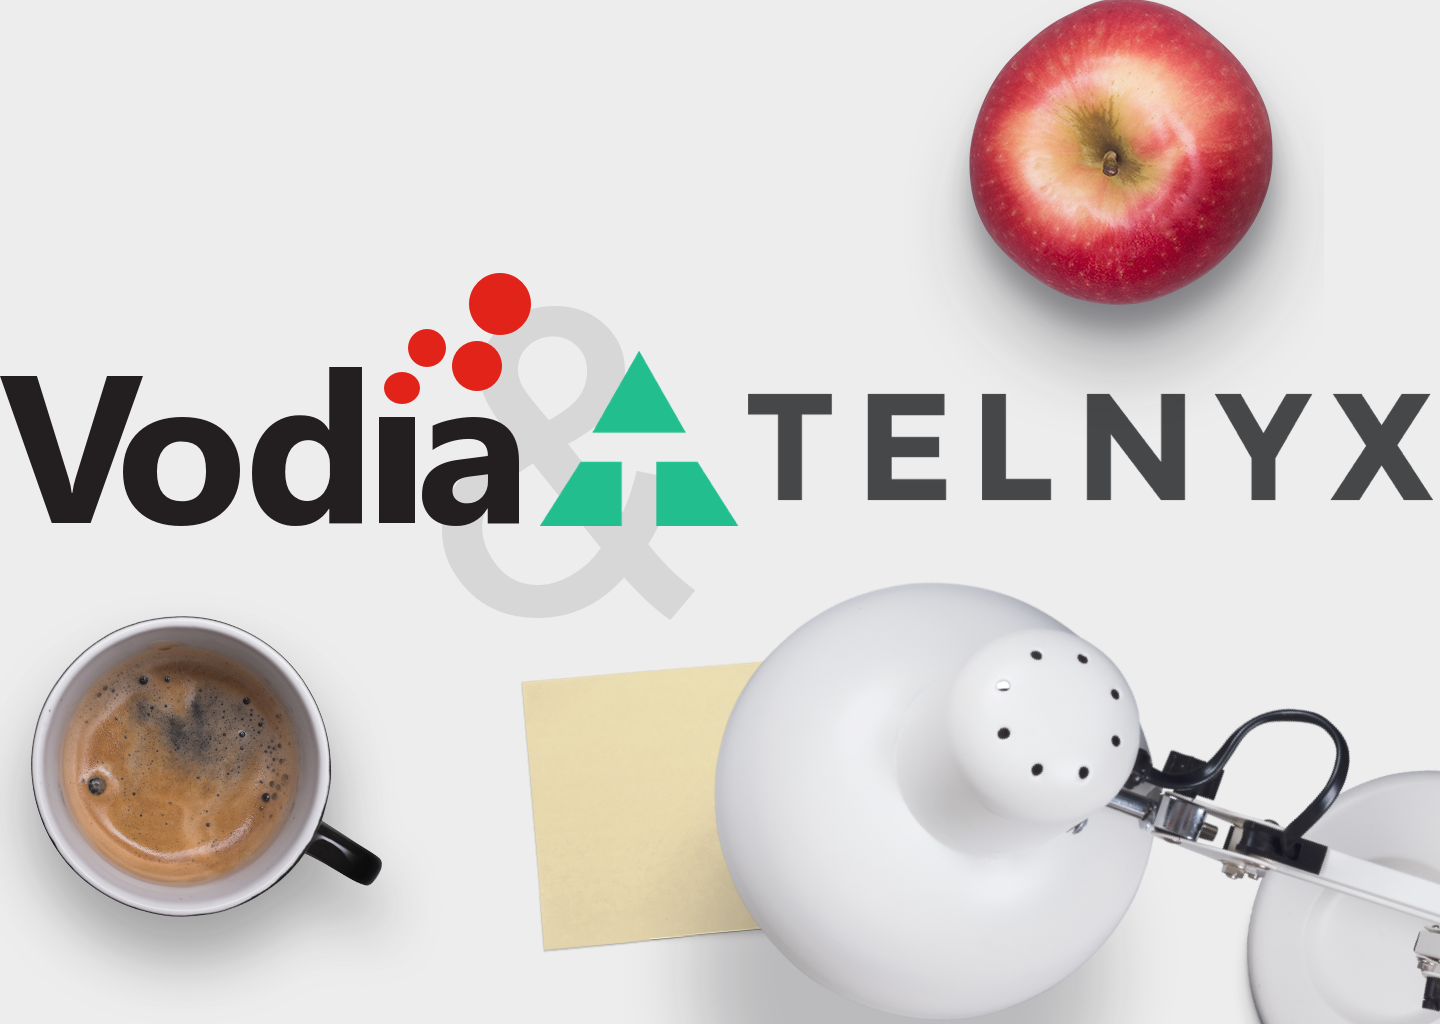 Vodia and Telnyx